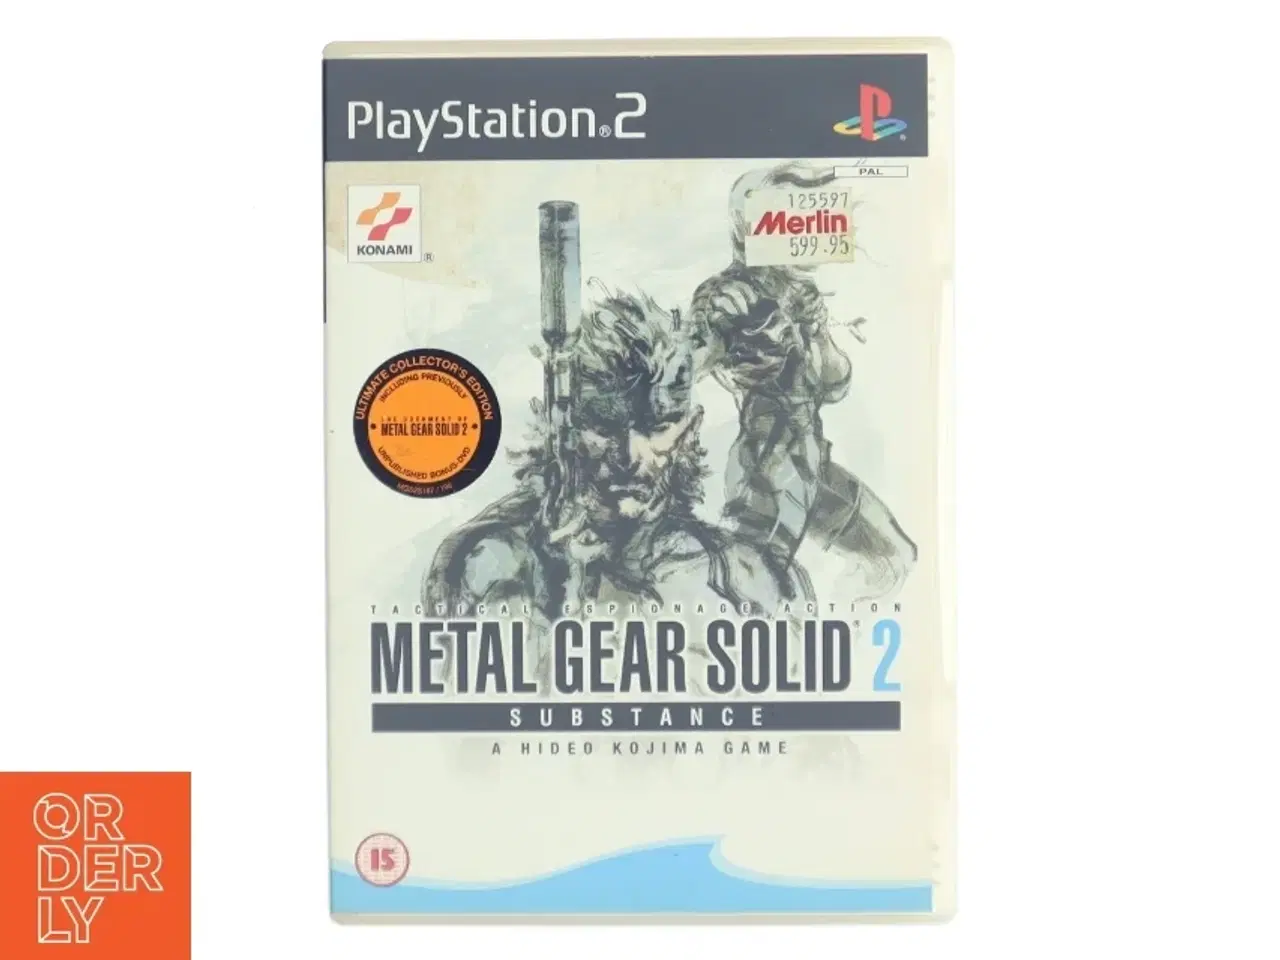 Billede 1 - Metal Gear Solid 2: Substance - PS2 fra Konami